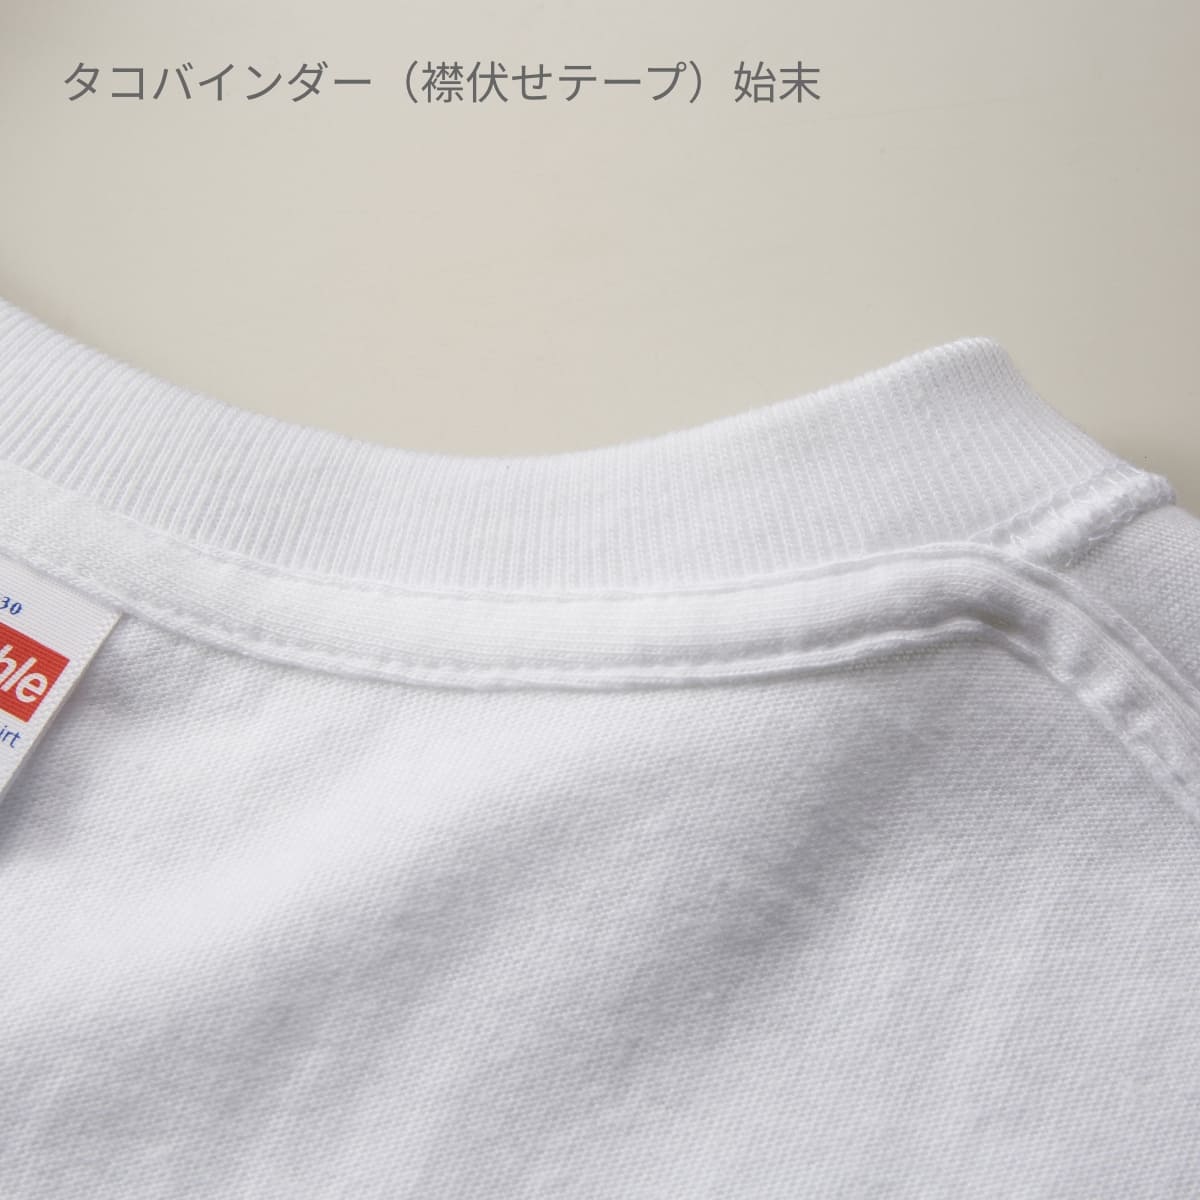 5.6オンス ハイクオリティーTシャツ | ビッグサイズ | 1枚 | 5001-01 | セージグリーン